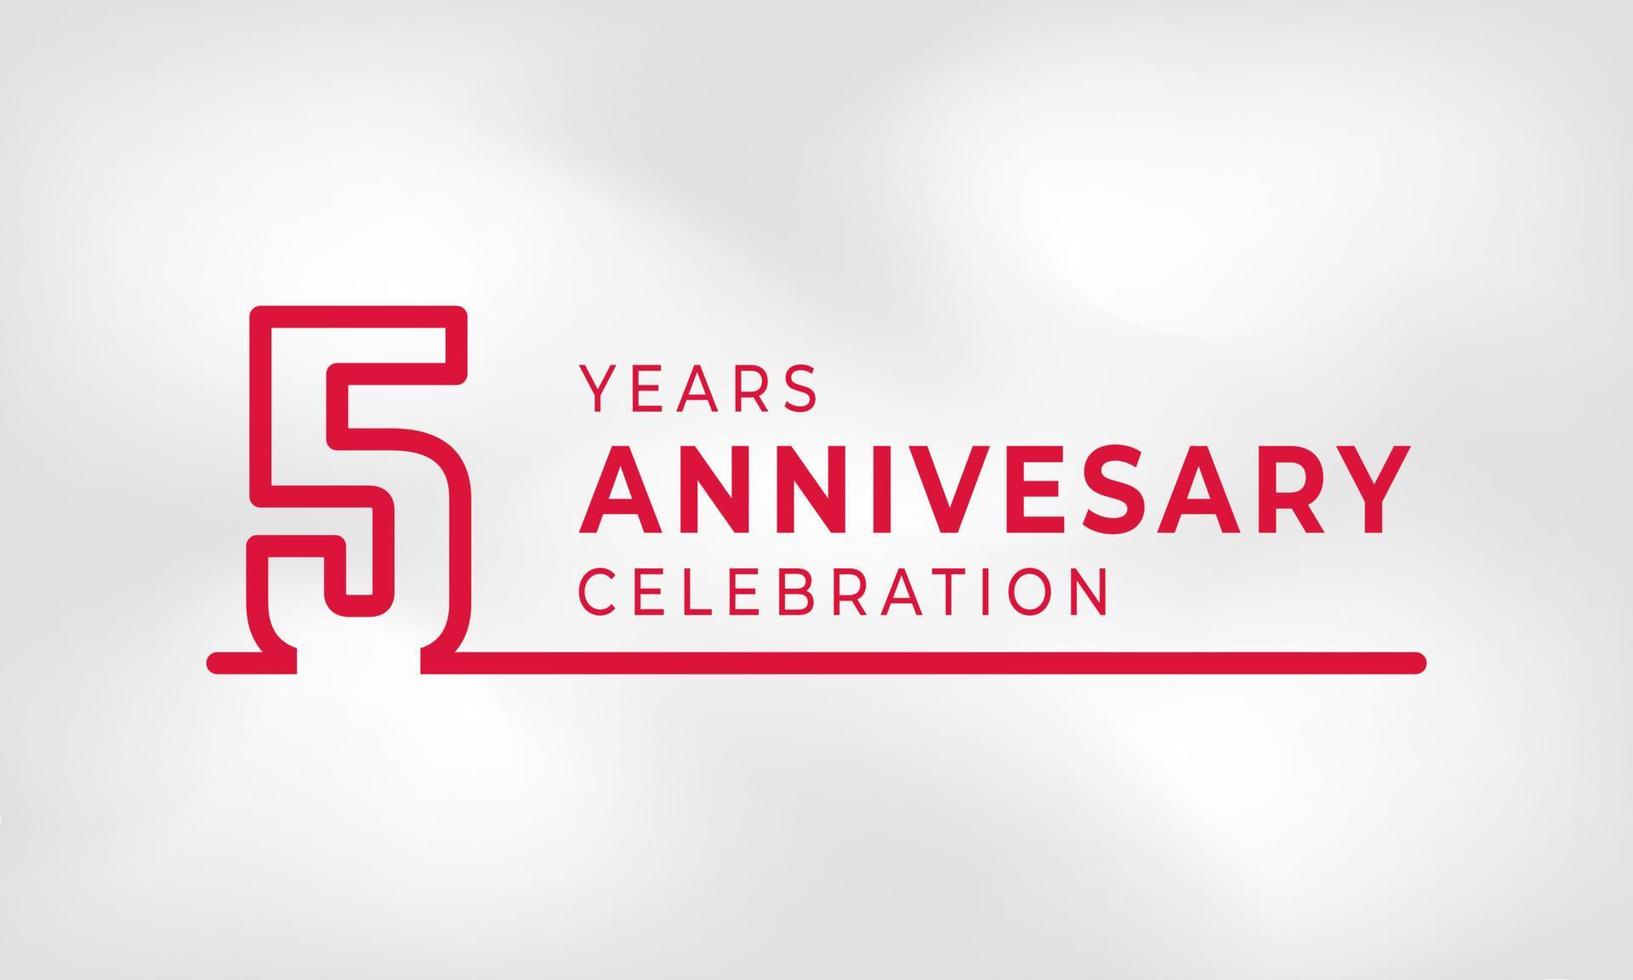 Célébration de l'anniversaire de 5 ans numéro de contour du logotype lié couleur rouge pour l'événement de célébration, le mariage, la carte de voeux et l'invitation isolés sur fond de texture blanche vecteur